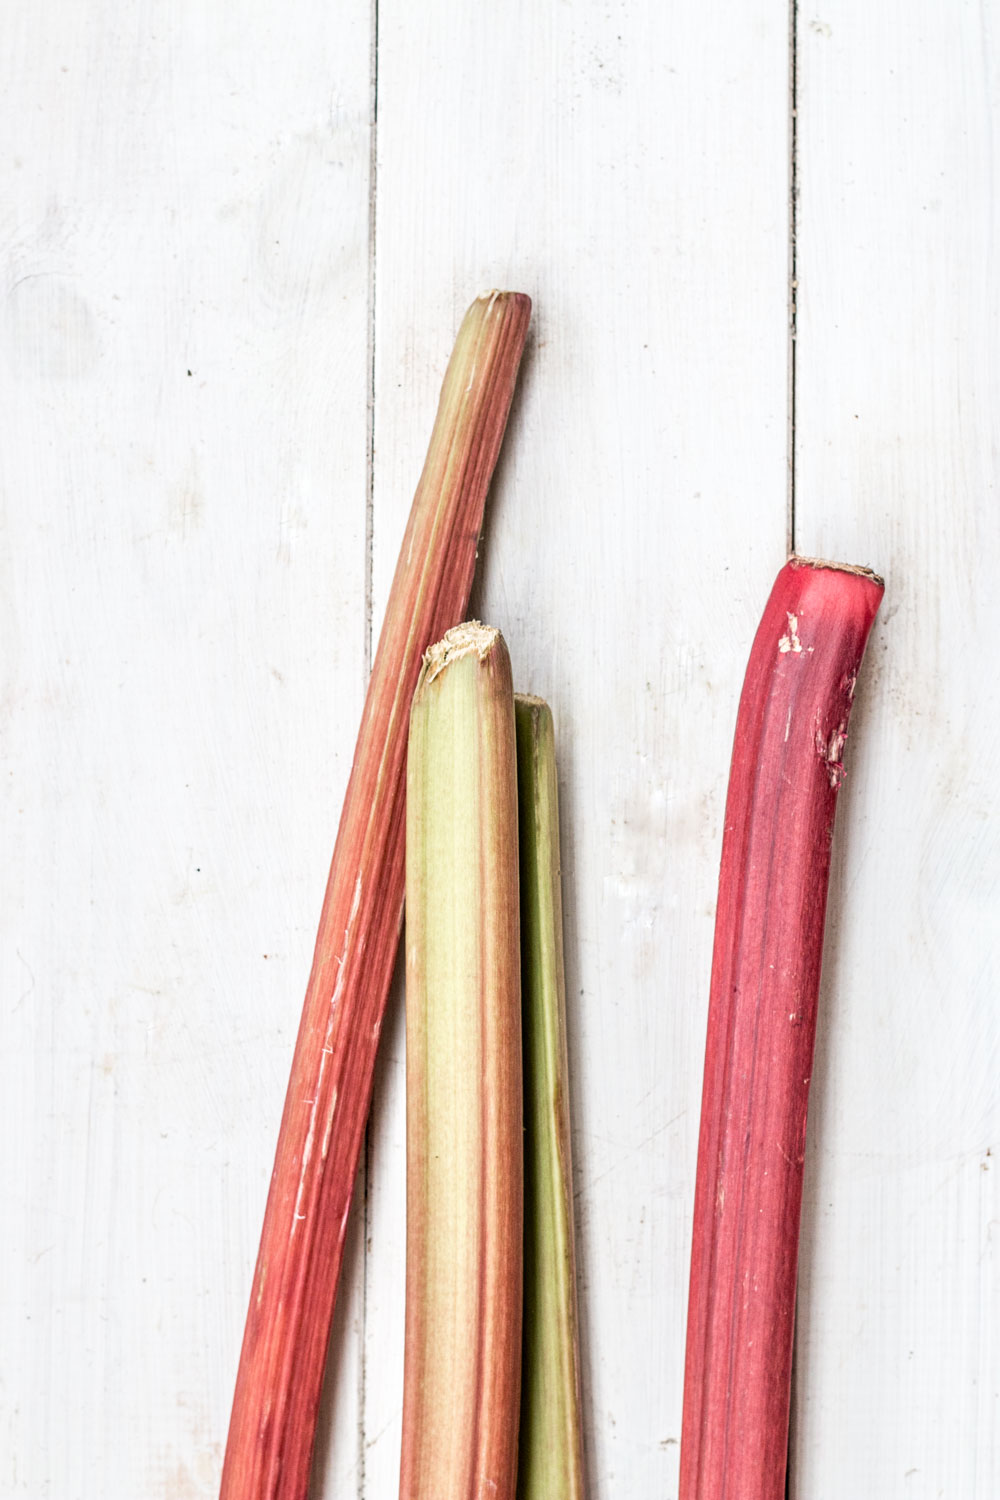 rhubarb - seasonal recipe